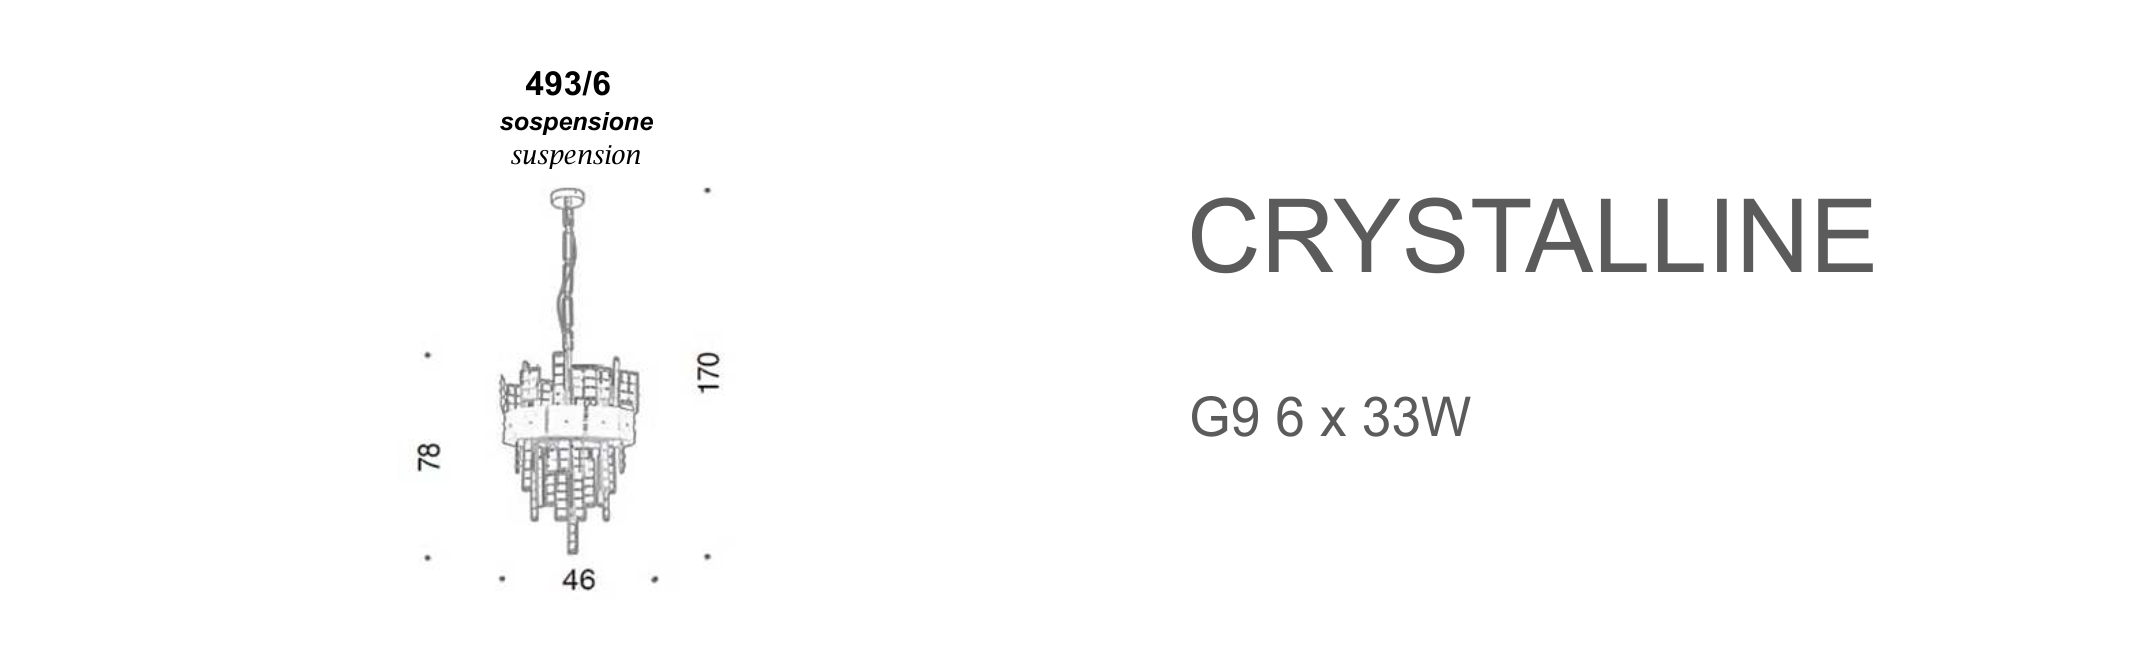 Crystalline 493/6